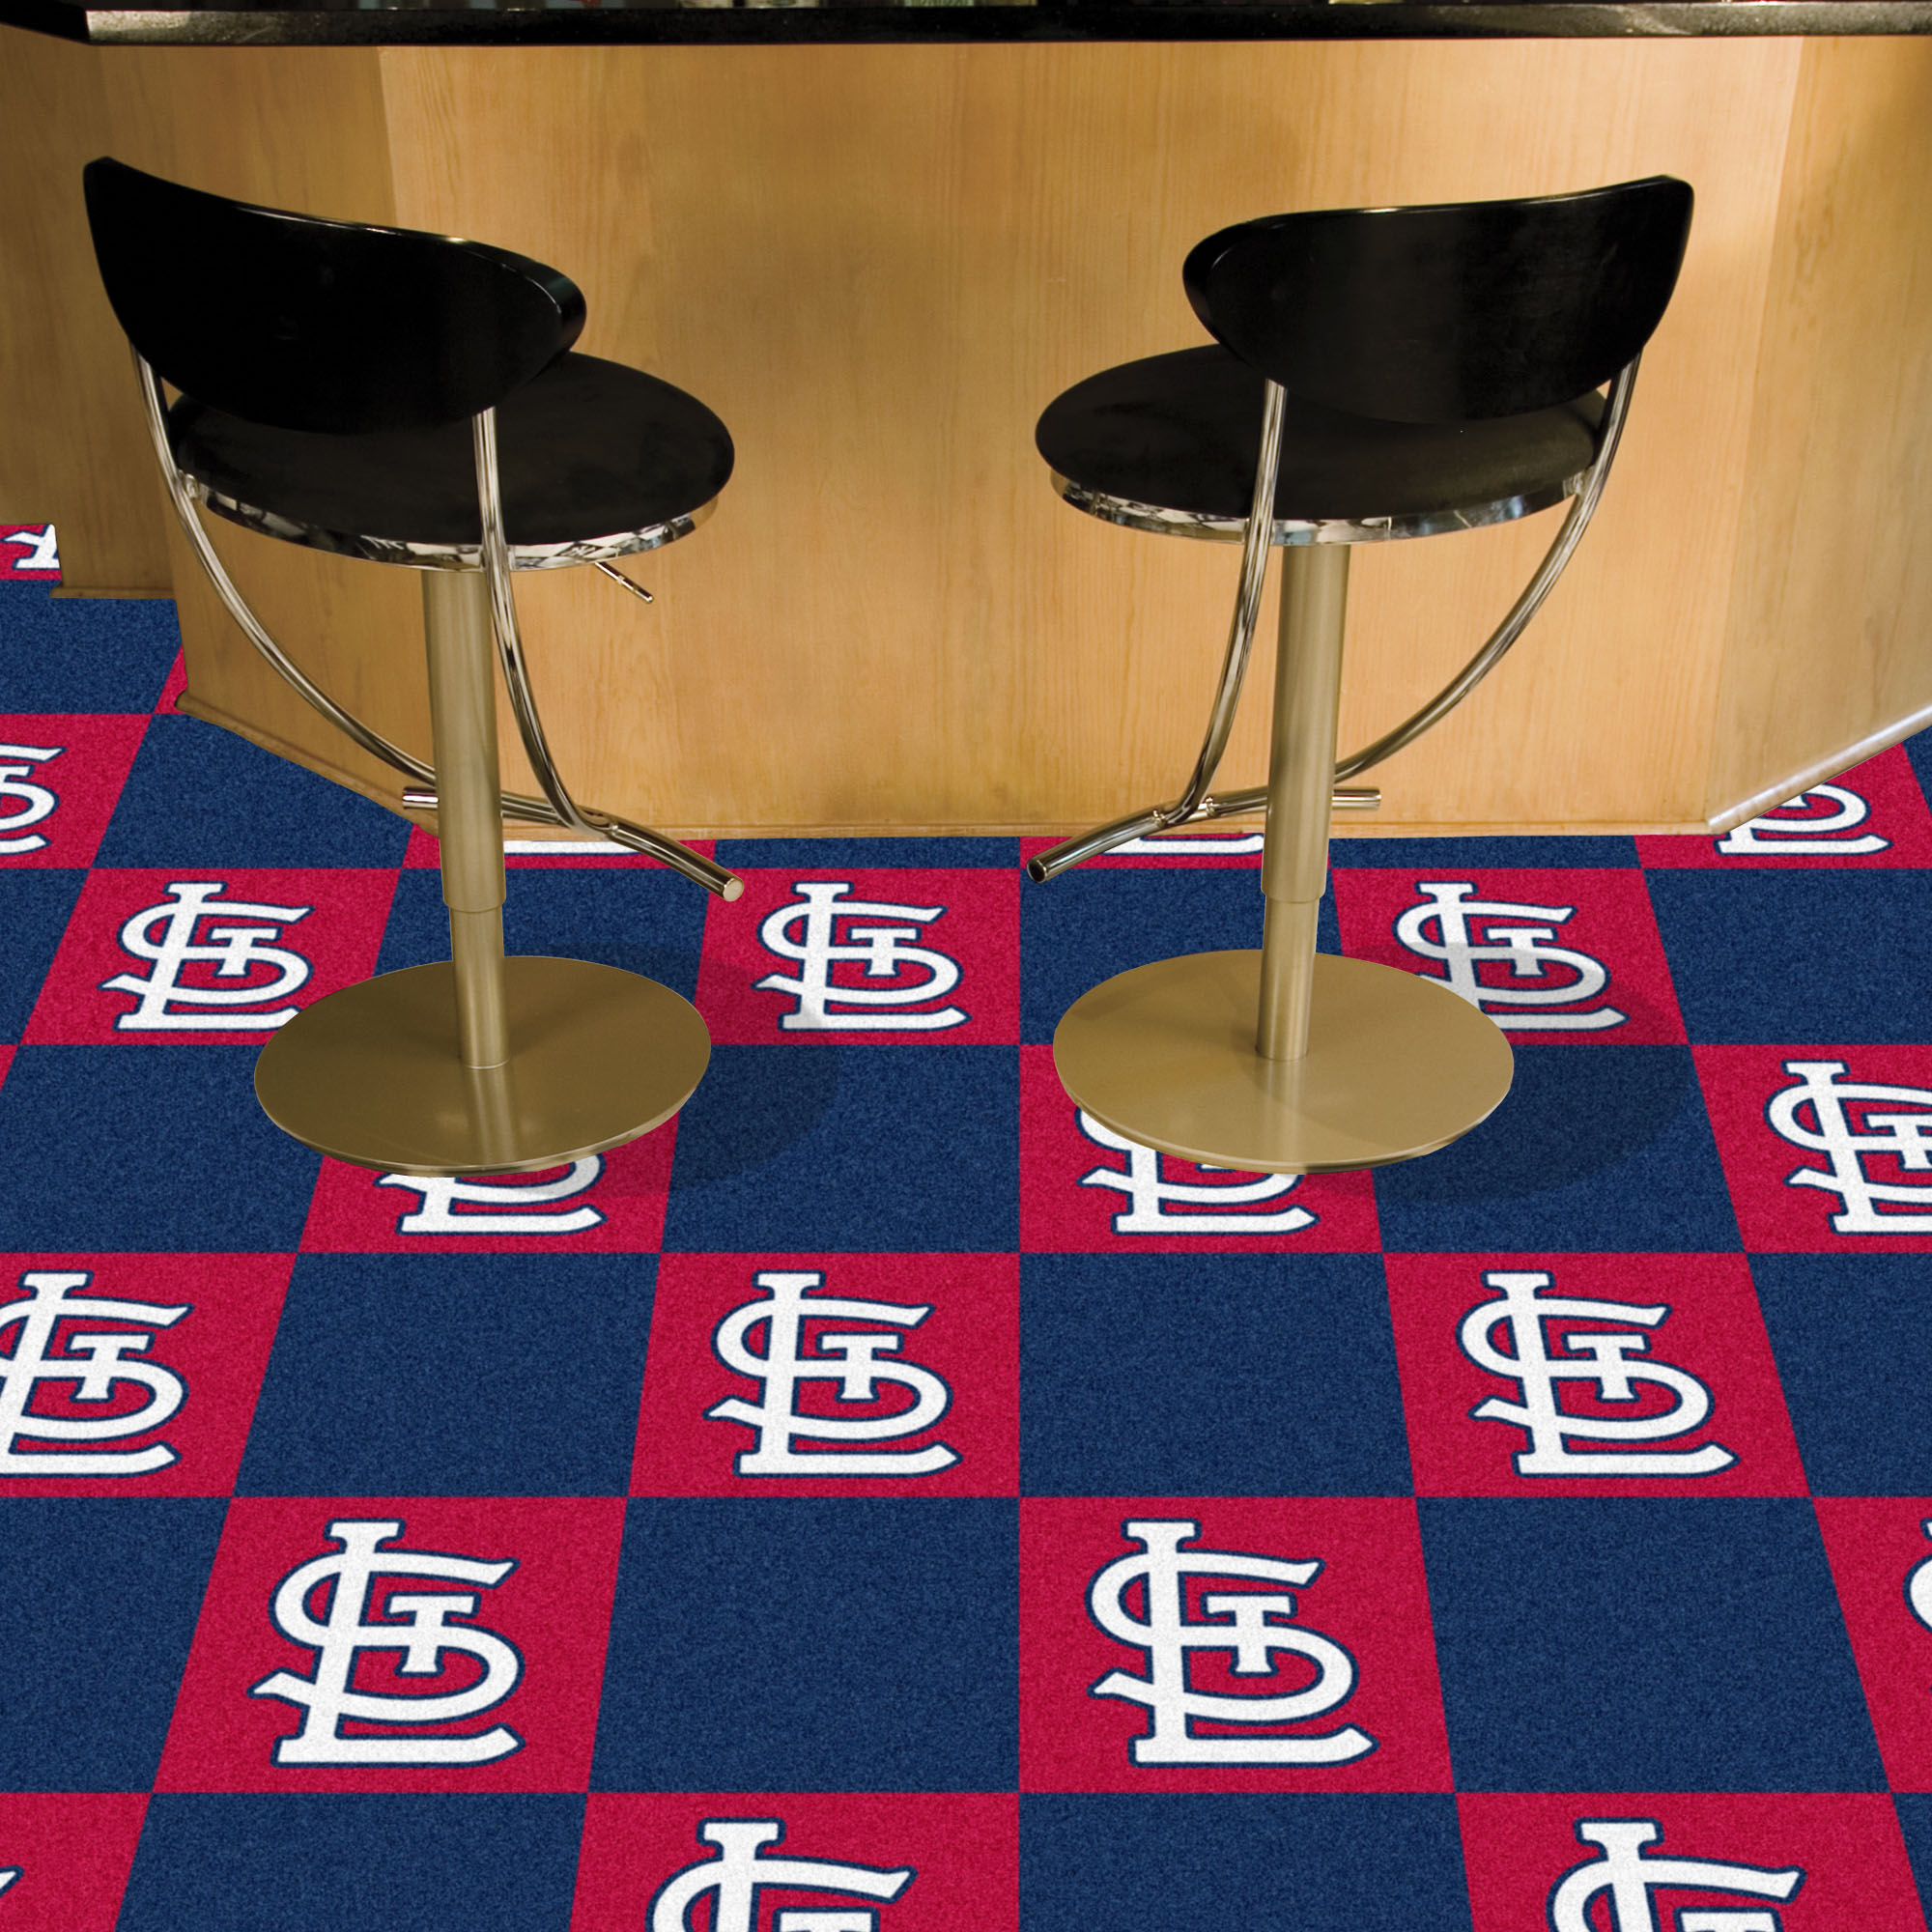 St. Louis Cardinals Team Carpet Tiles - 45 sq ft